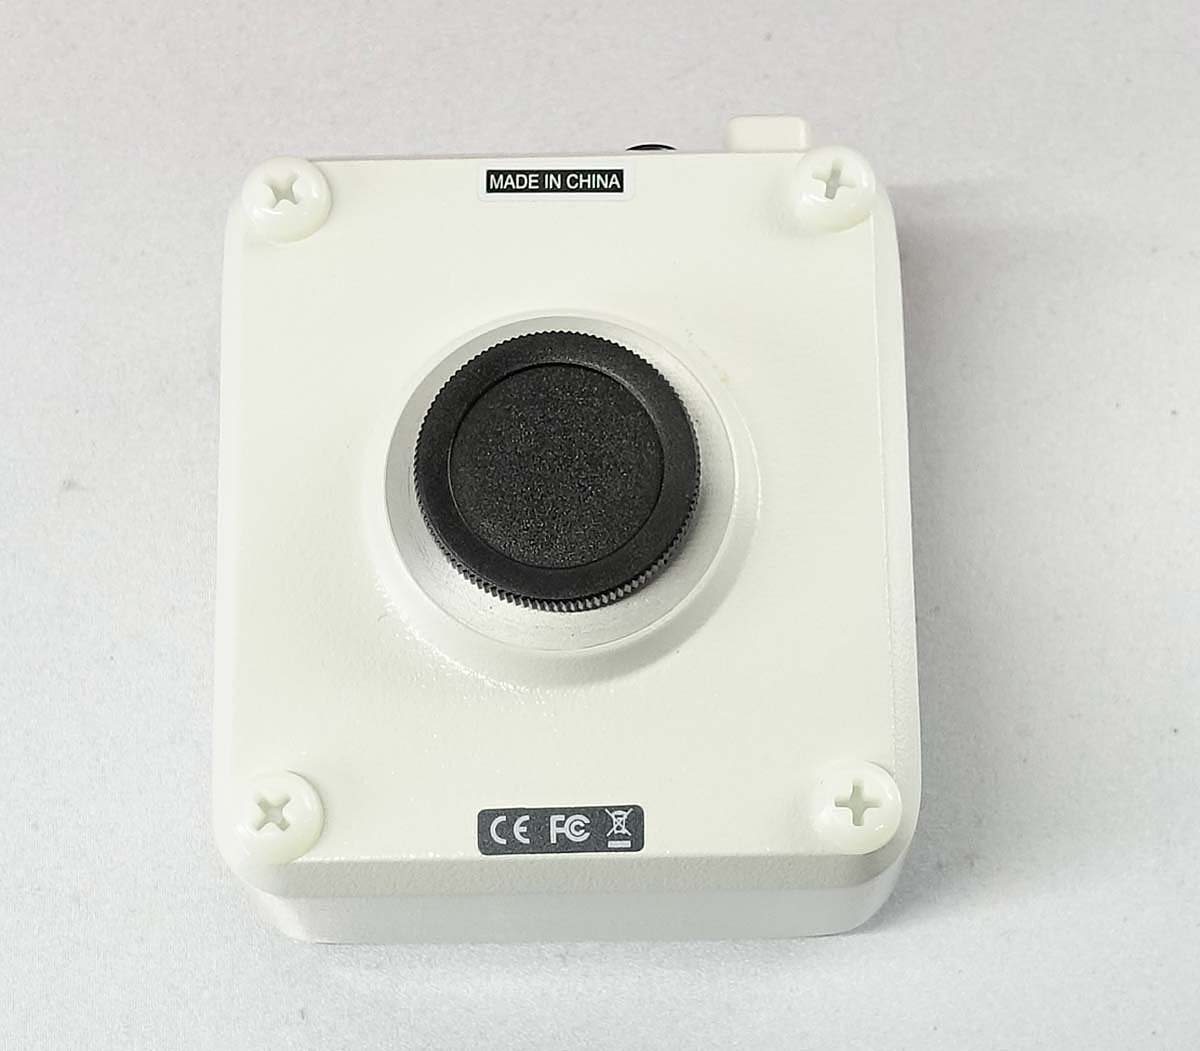 島津理化 顕微鏡 デジタルカメラシステム Moticam 1080 カメラ 実験 観測 観察 理化学機器 撮影 研究 レンズ shimadzu S120103_画像3